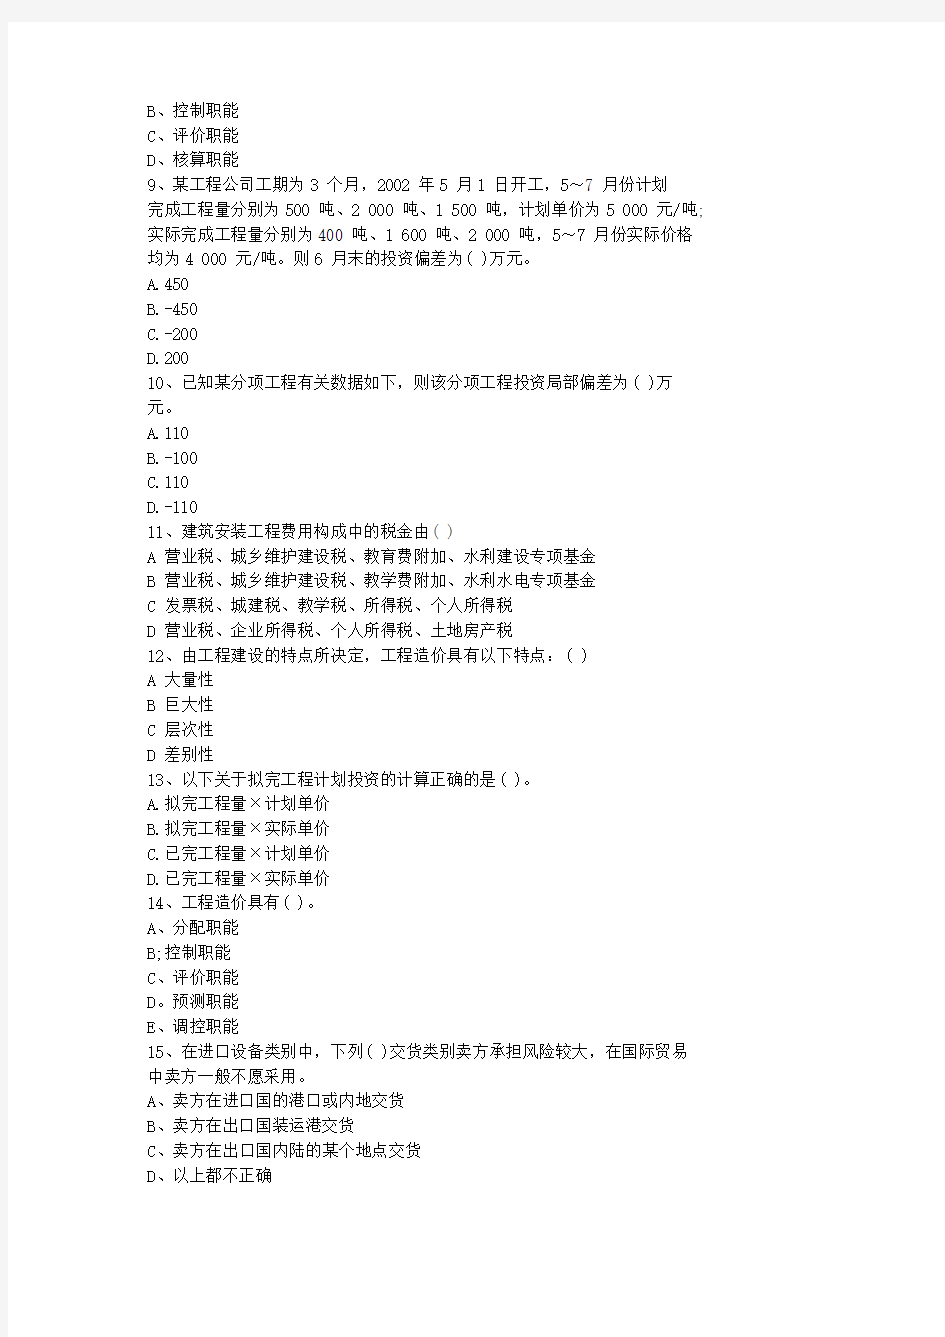 2011台湾省造价员考试土建试题以及答案(最新)考试题库